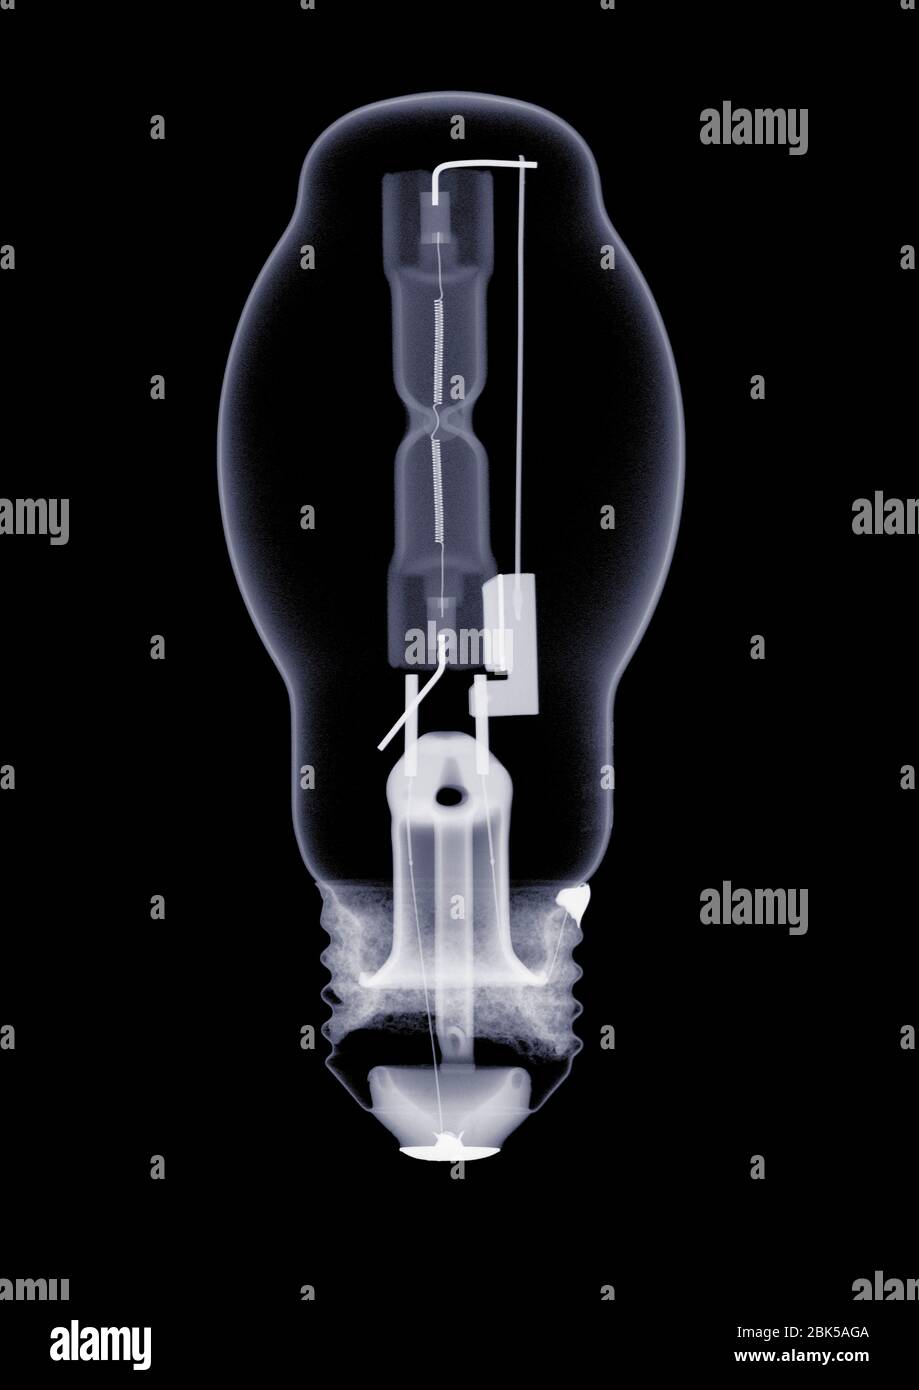 Bombilla con filamento intrincado, rayos X. Foto de stock